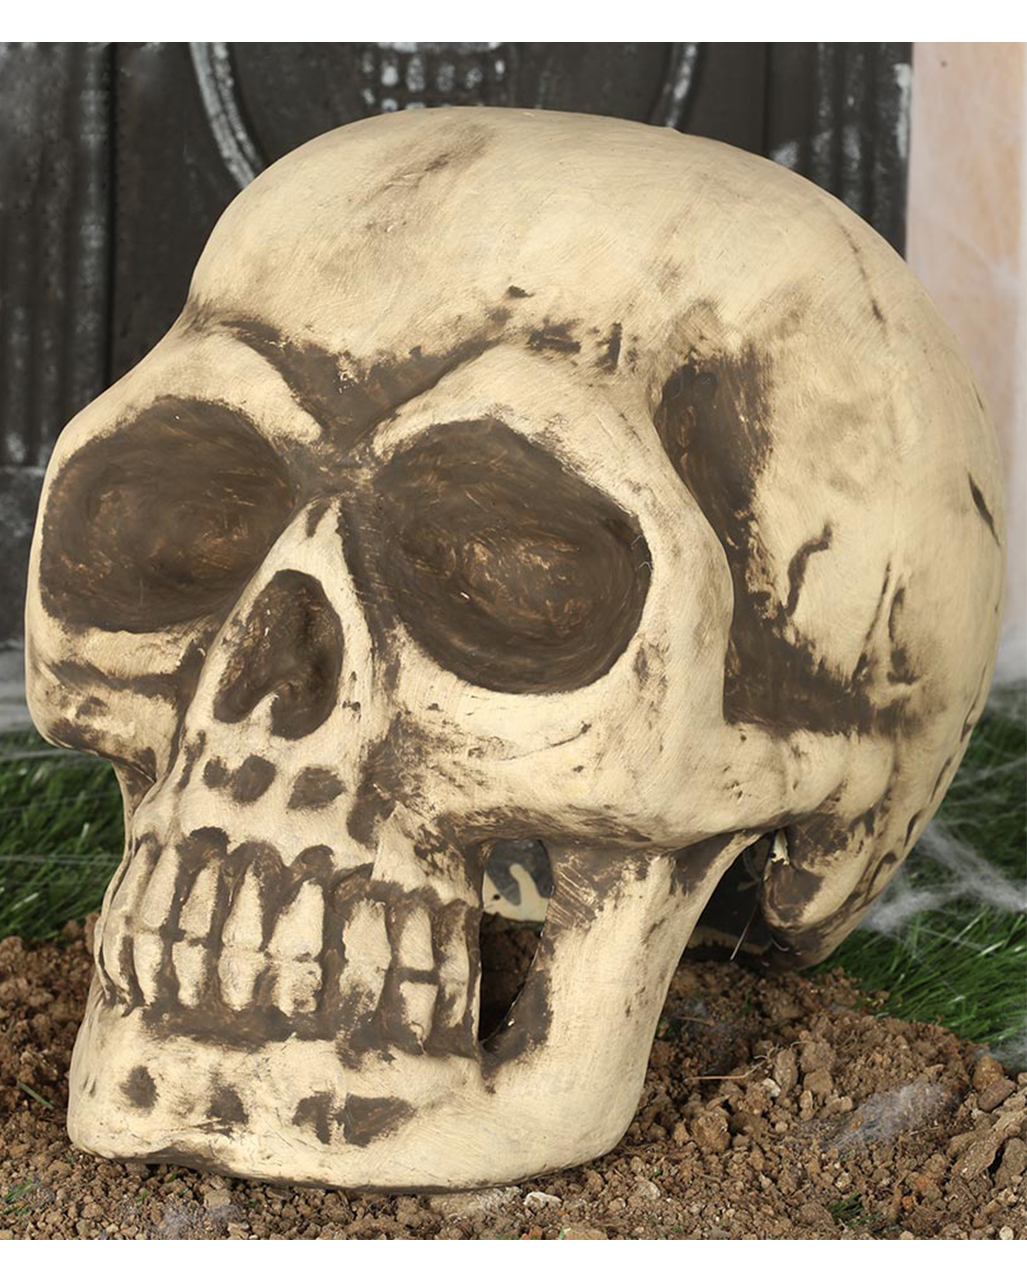 https://inst-1.cdn.shockers.de/hs_cdn/out/pictures/master/product/1/totenkopf-32cm-totenschaedel-halloween-dekoration-skull-decoration-35978.jpg